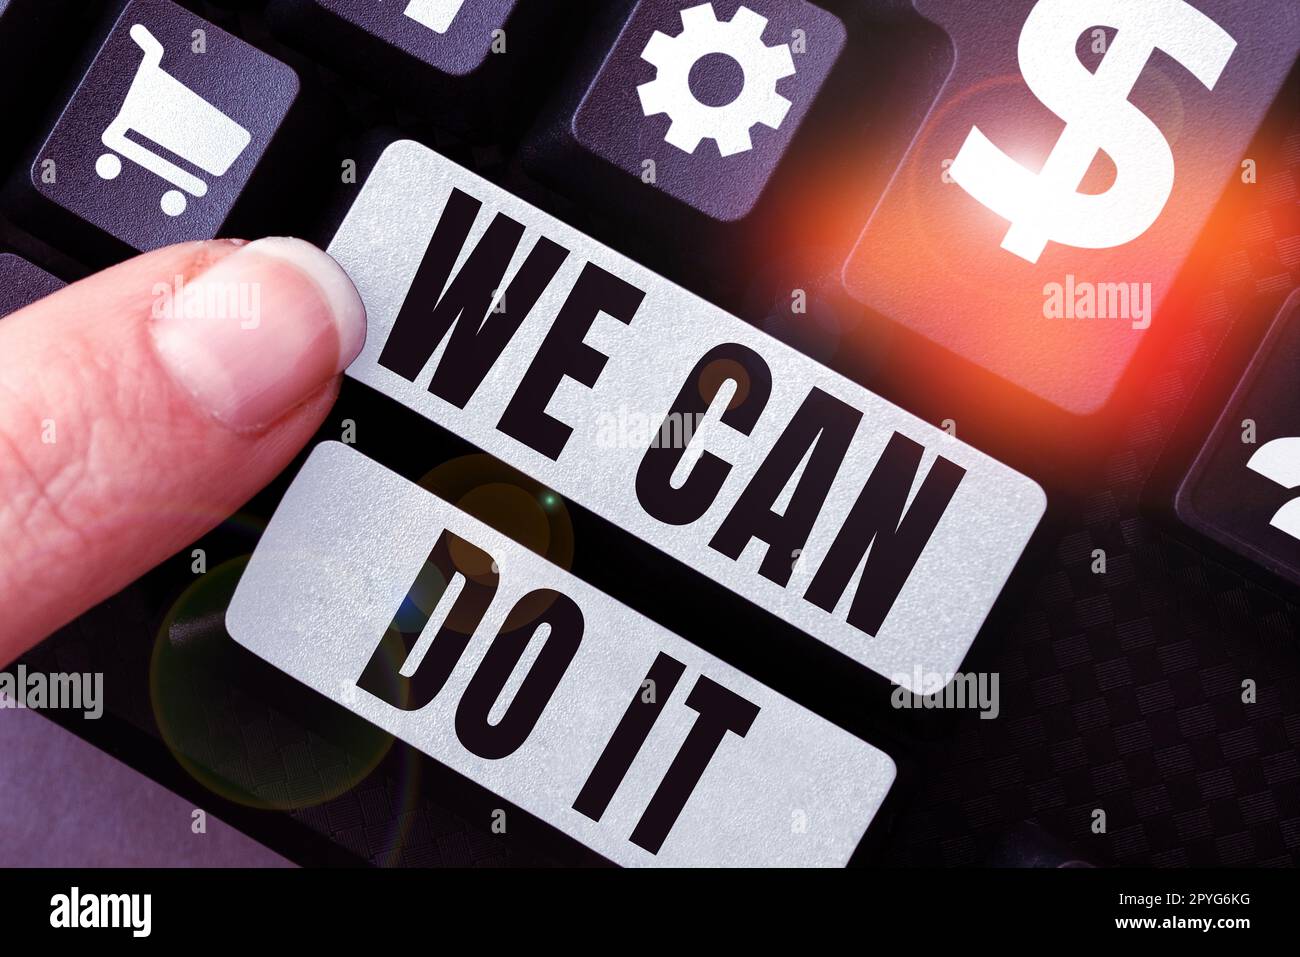 Textzeichen mit „We Can Do IT“. Wort für Wort, betrachte dich selbst als mächtige, fähige Person Stockfoto